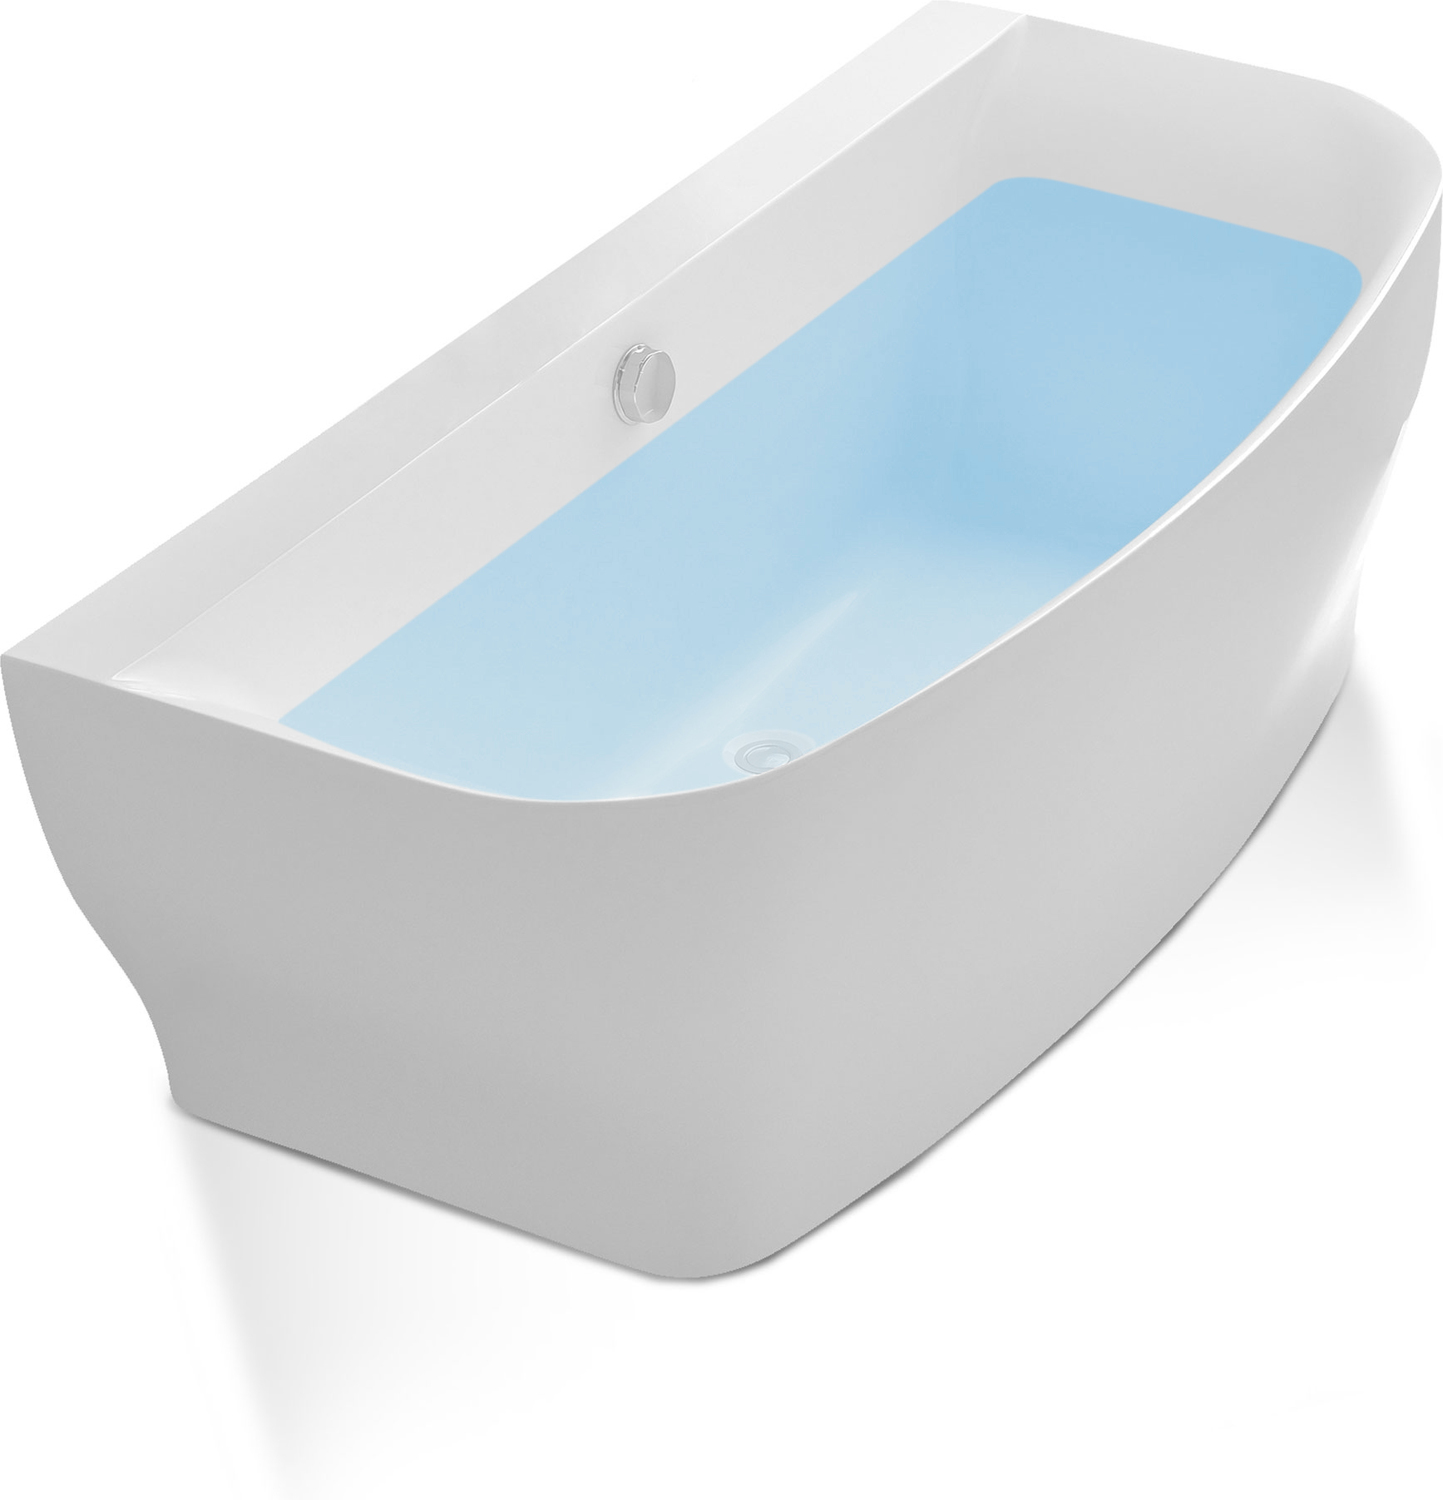 bear claw tub Anzzi BATHROOM - Bathtubs - Freestanding Bathtubs - One Piece - Acrylic White